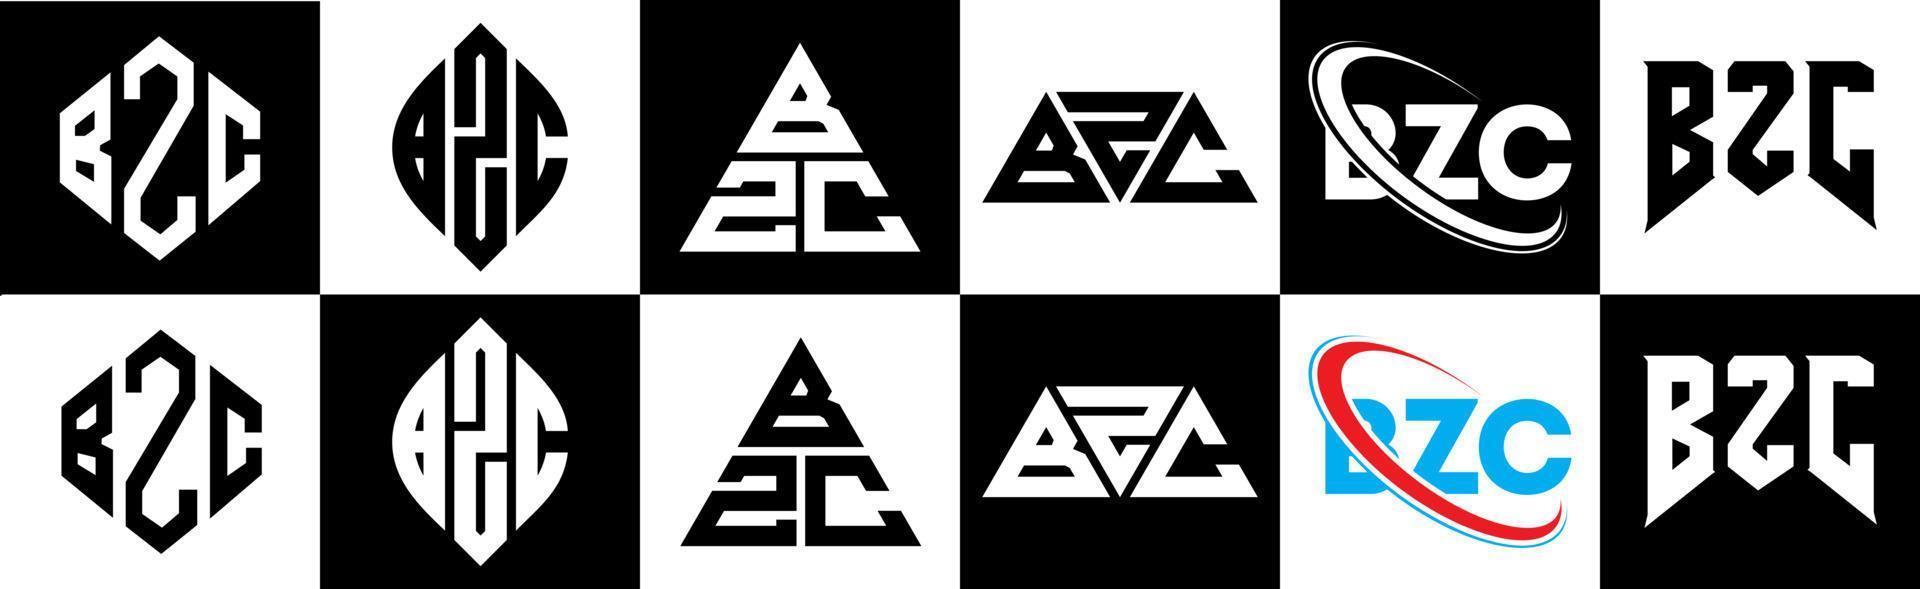 création de logo de lettre bzc en six styles. bzc polygone, cercle, triangle, hexagone, style plat et simple avec logo de lettre de variation de couleur noir et blanc dans un plan de travail. logo bzc minimaliste et classique vecteur